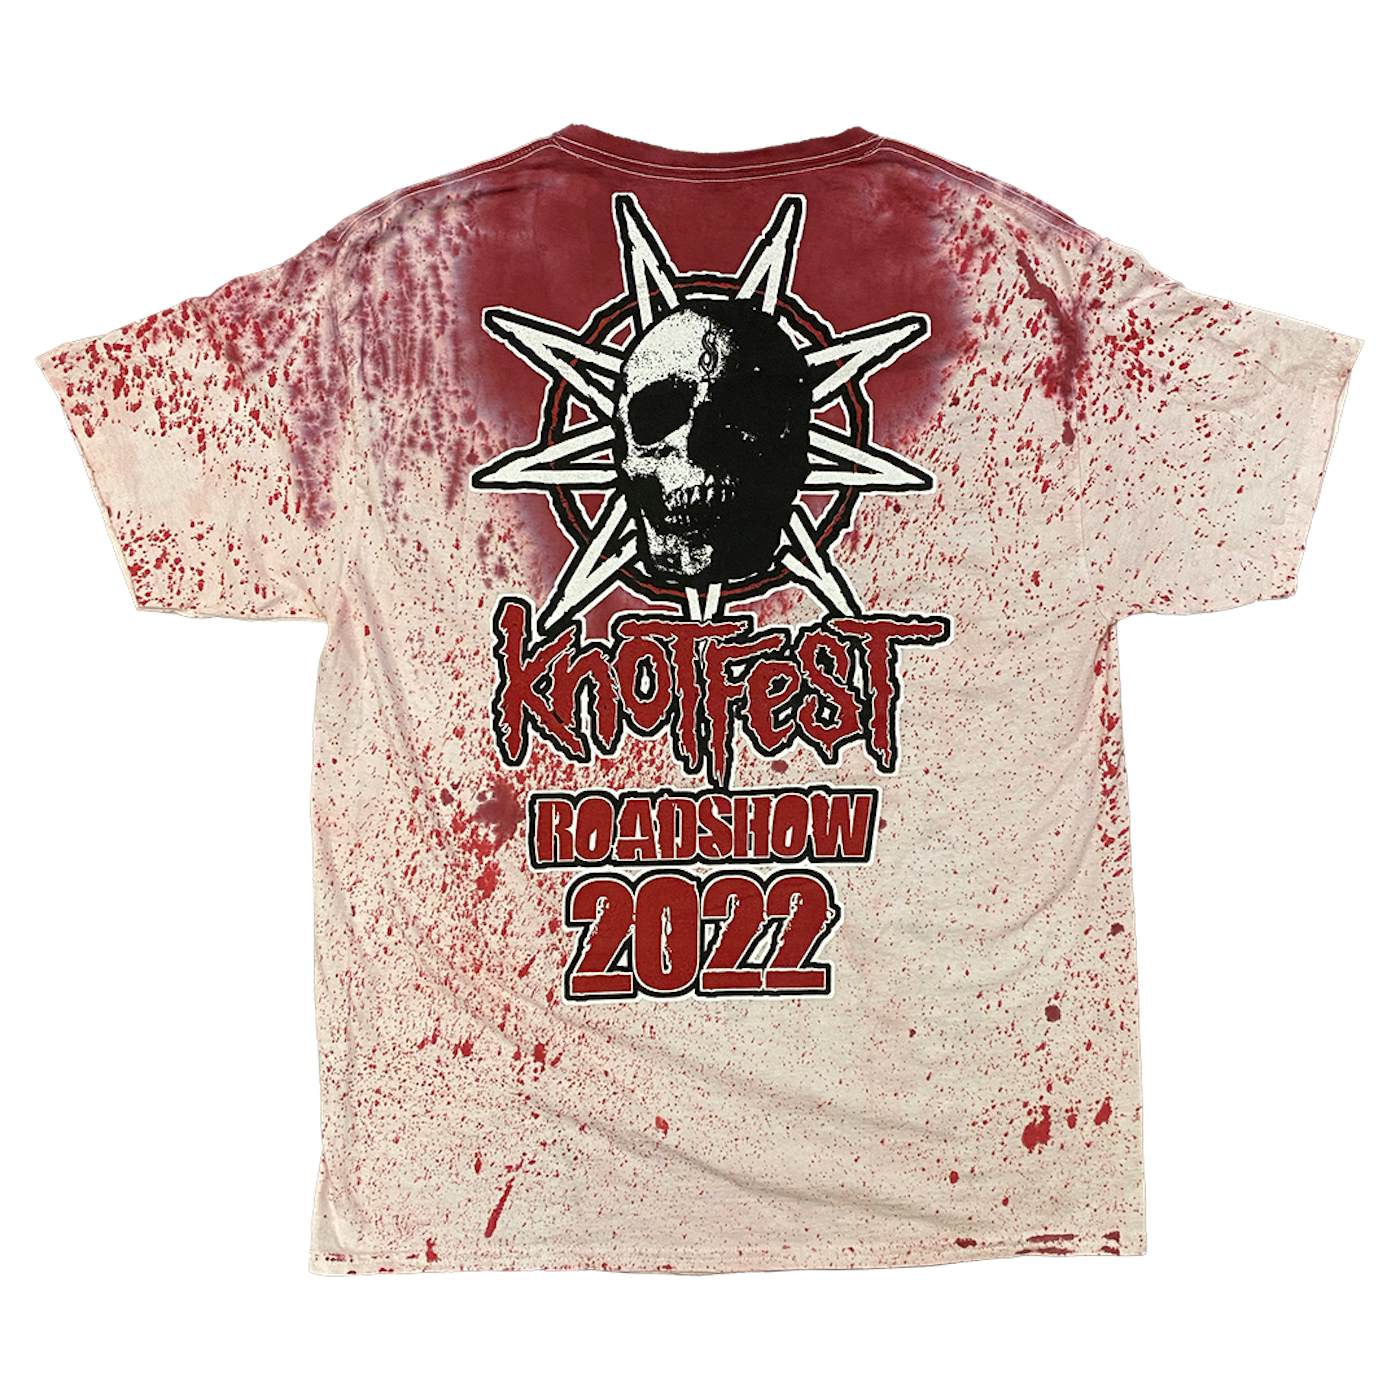 Slipknot Knotfest Leg 2 Star Skull Blood Splatter T-Shirt